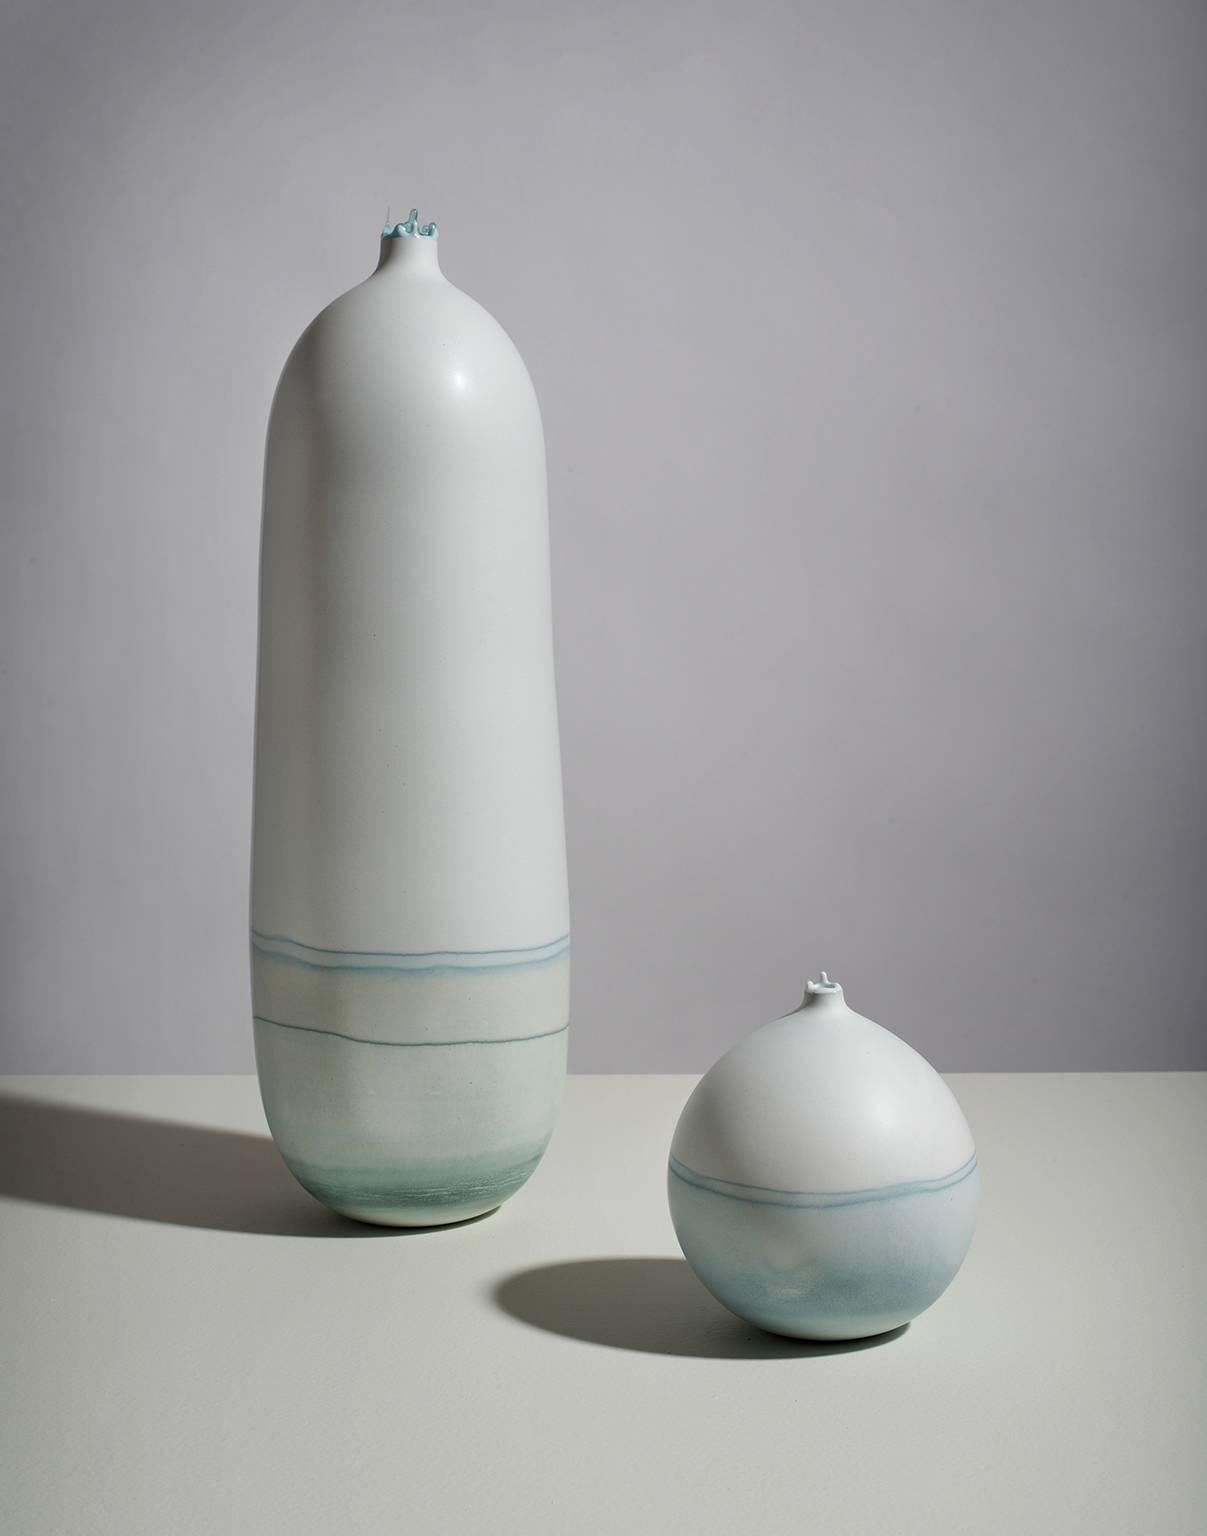 Diese wunderschön minimalistische Vase wird von der Künstlerin Elyse Graham in ihrem Atelier in Los Angeles handgefertigt.

Diese Gefäßkollektion ist inspiriert von den durch Gletschererosion entstandenen gestreiften Landschaften und den schönen